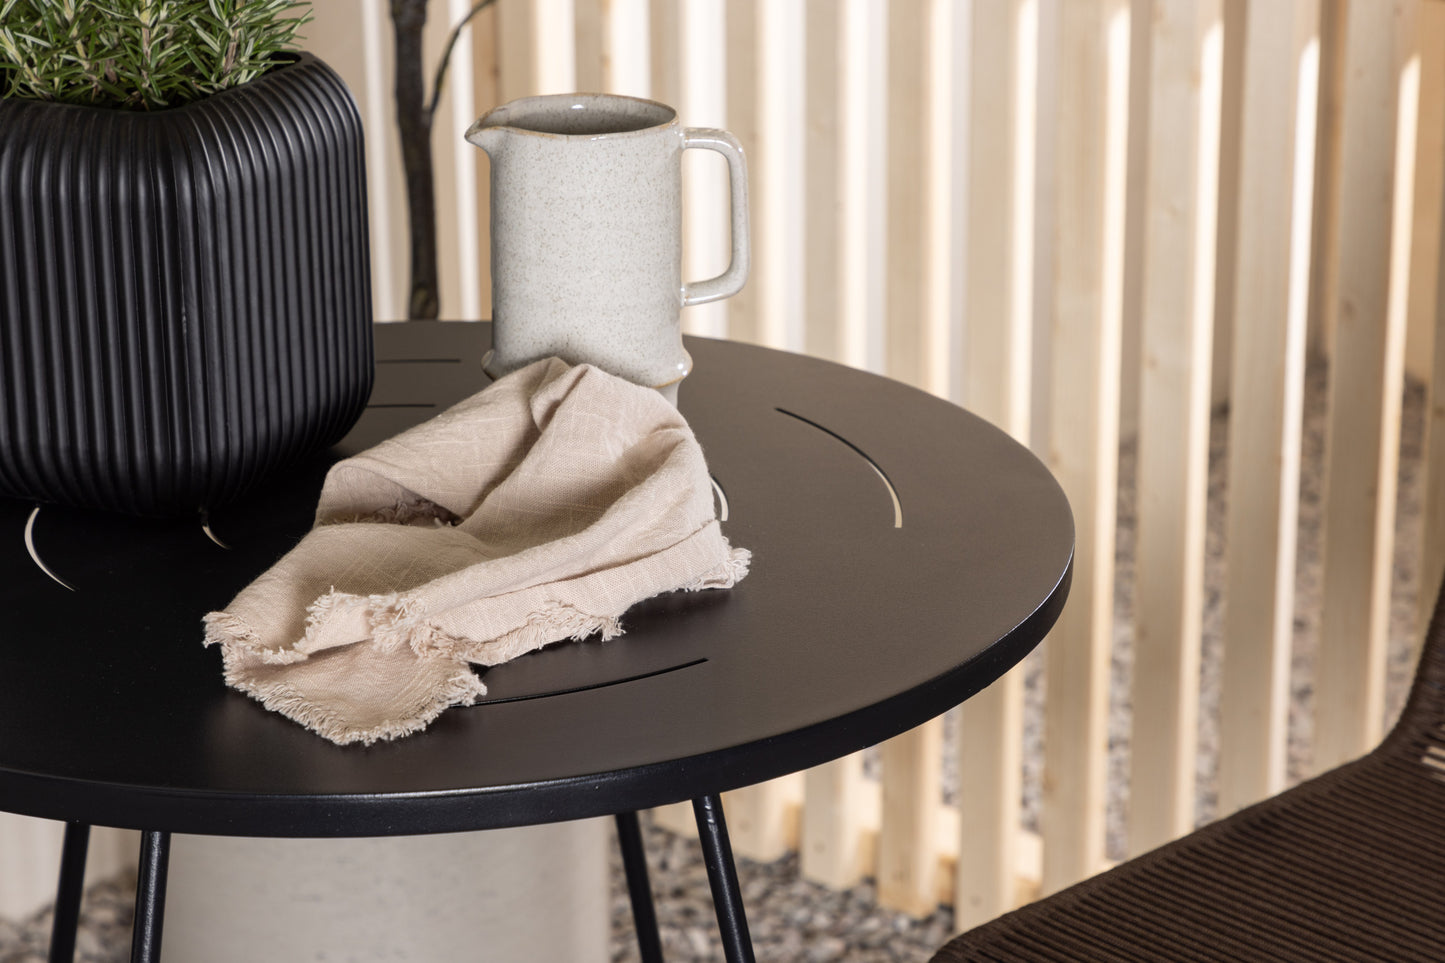 Bacong - Cafébord, Stål - Sort / Rundt ø60** +Lidos stol Aluminium - Sort